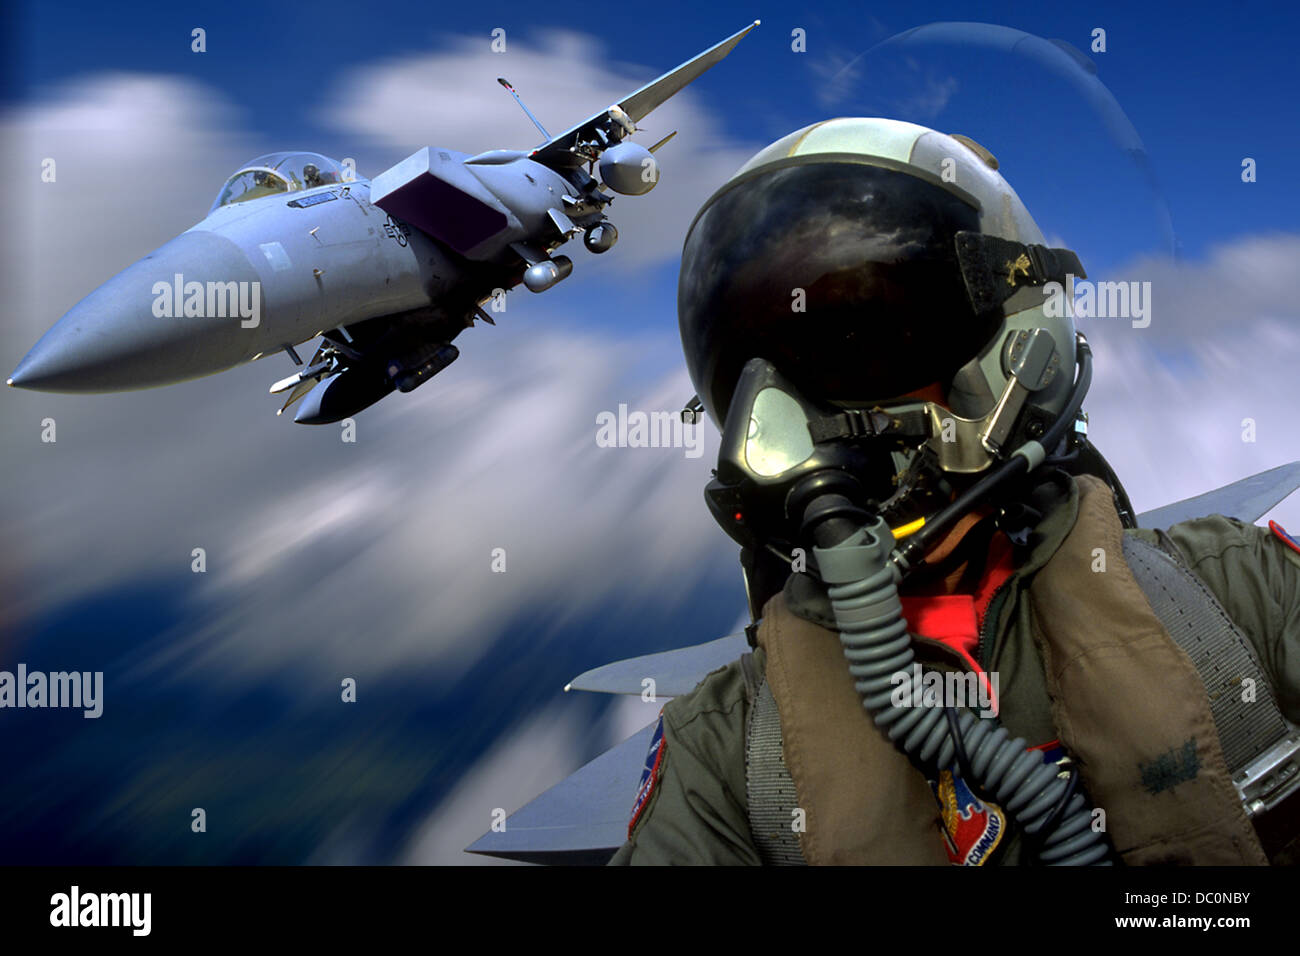 PILOT IM COCKPIT DER USAF F-15 EAGLE FLIEGEN NEBEN EINEM ANDEREN F-15 Stockfoto